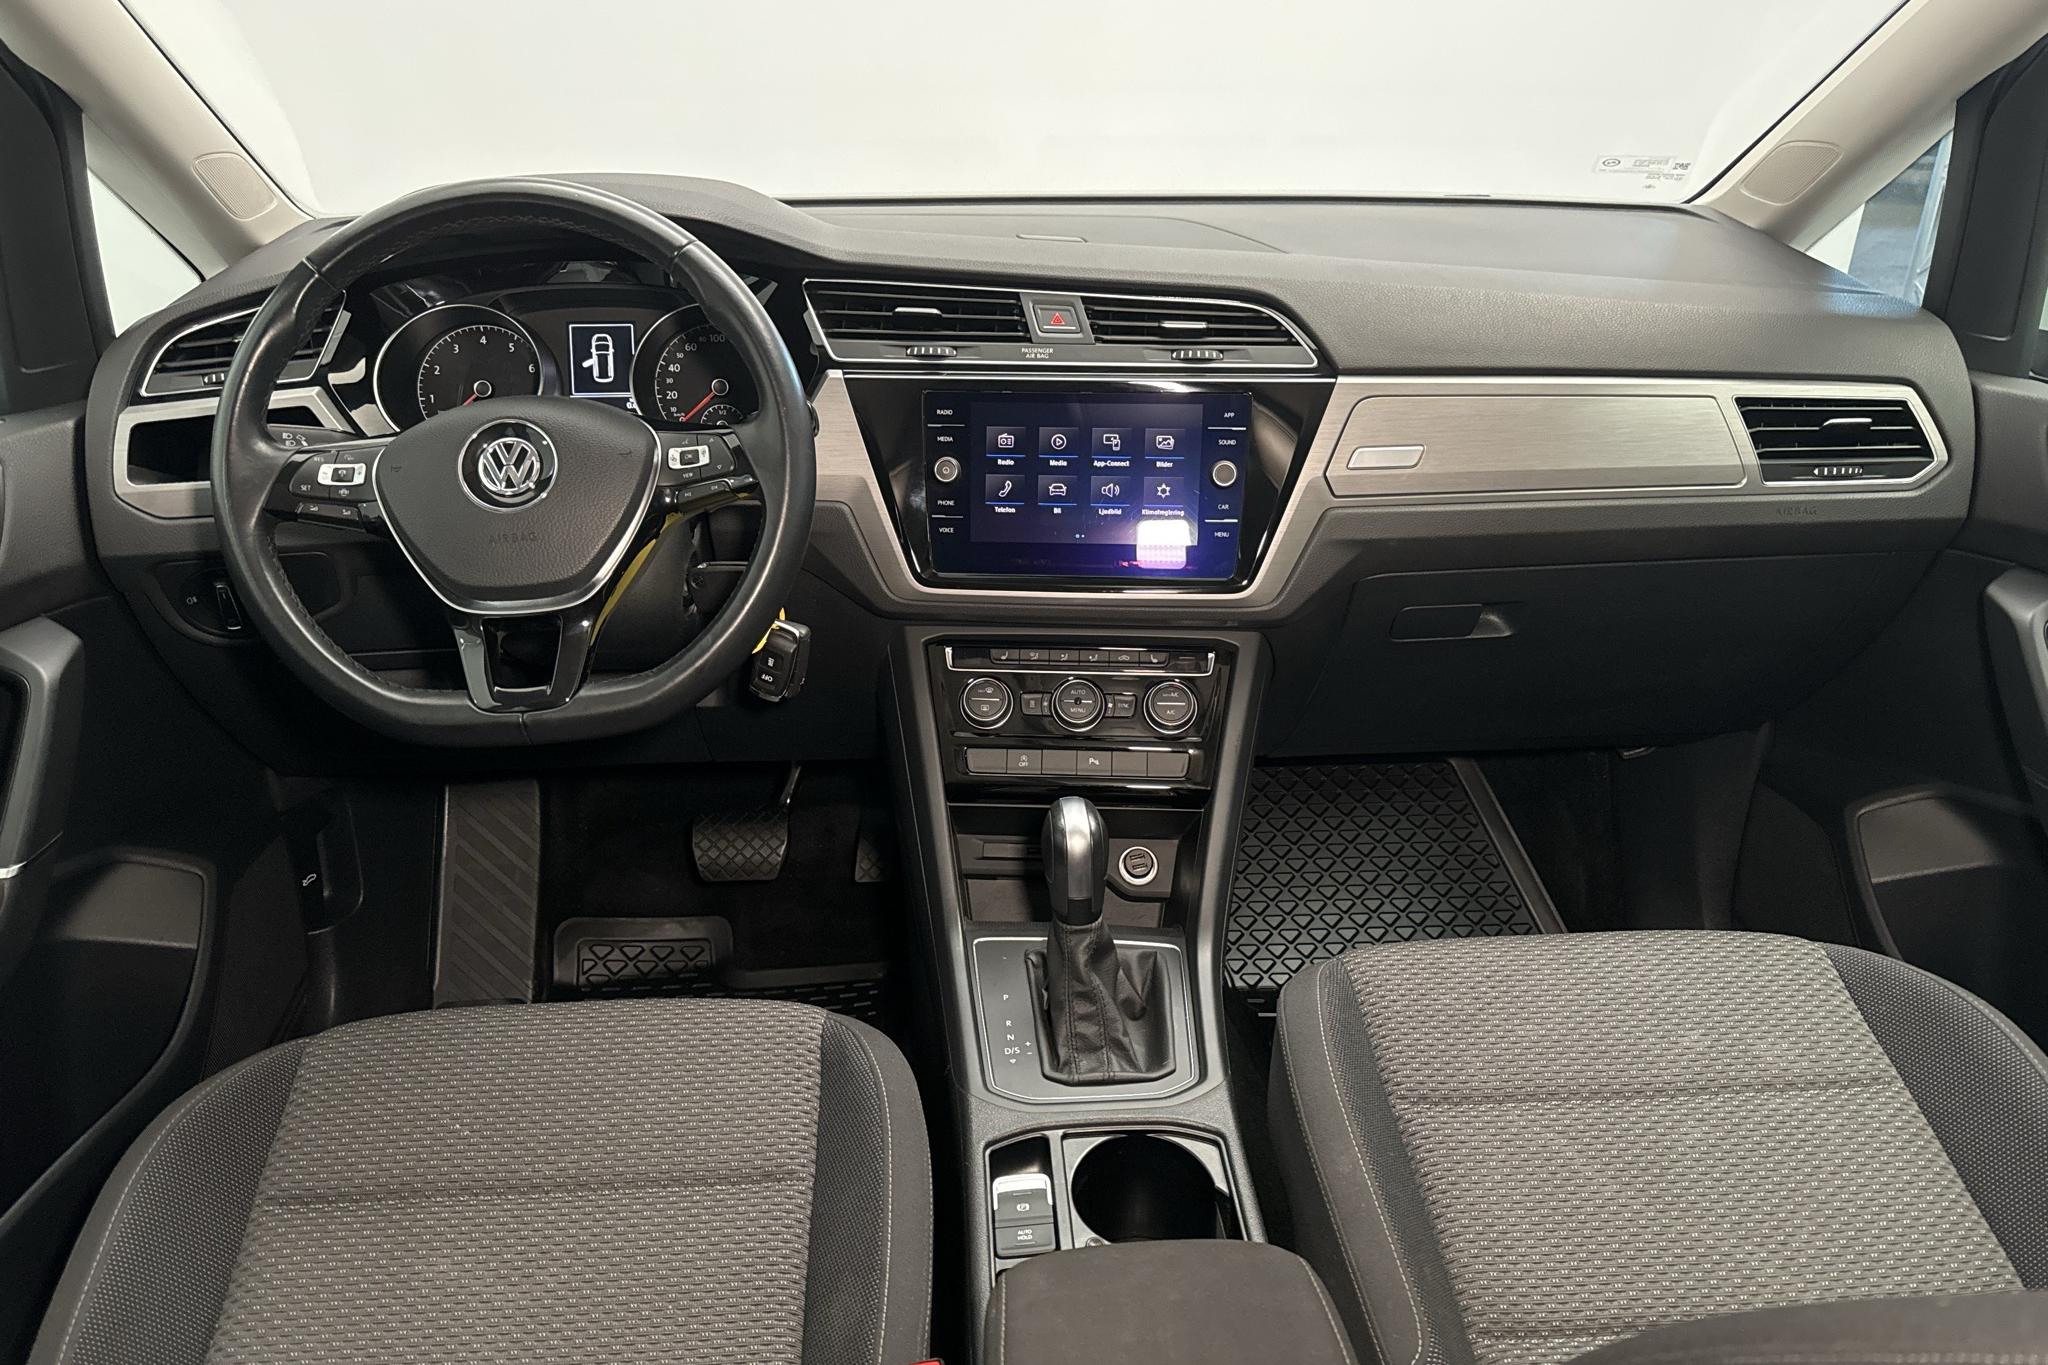 VW Touran 1.5 TSI (150hk) - 59 410 km - Automatic - white - 2020